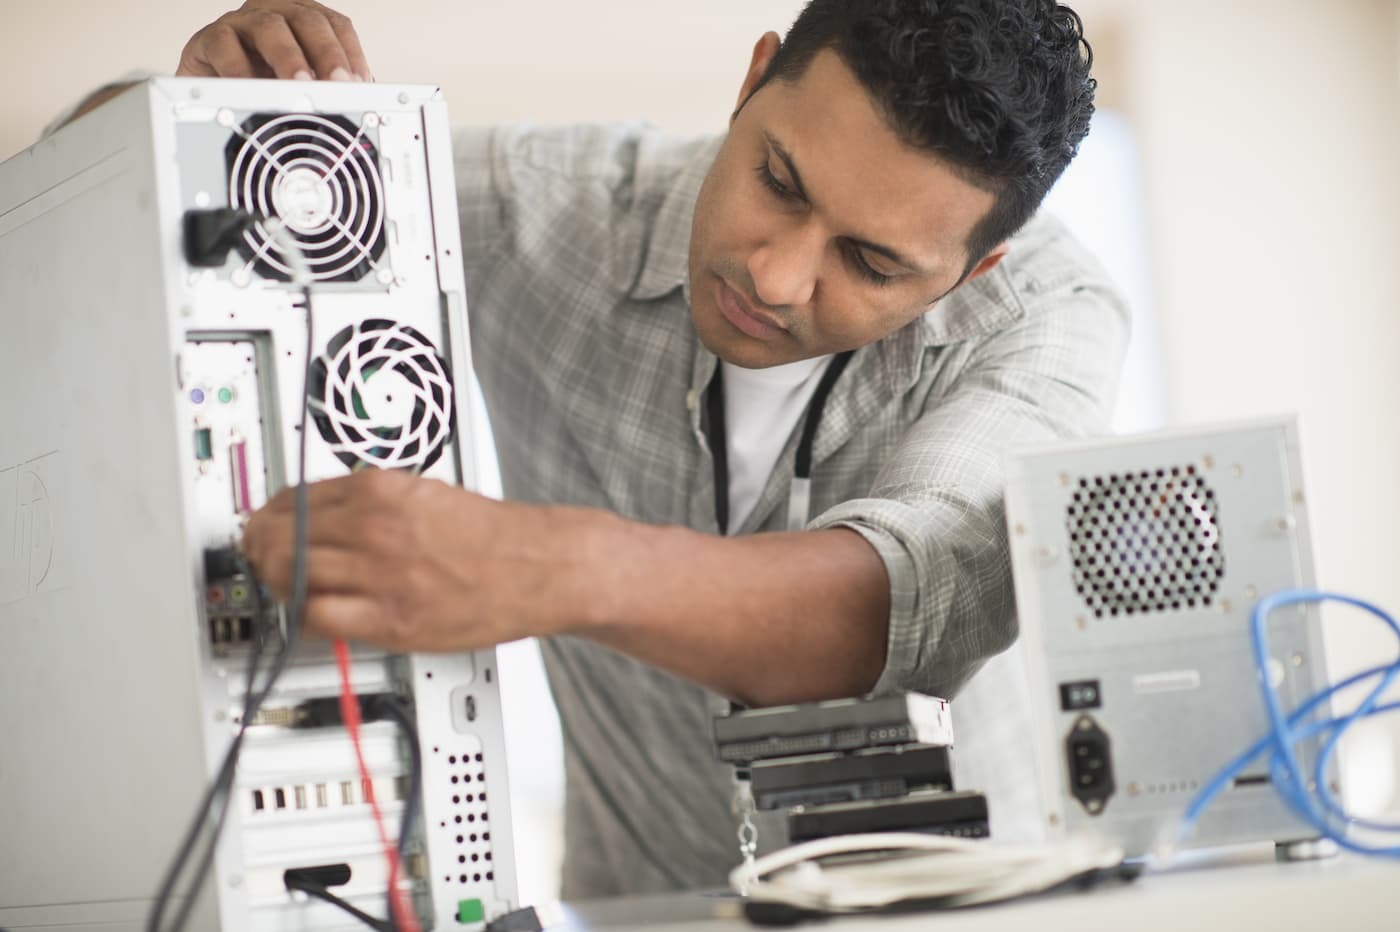 Man repairing desktop computer